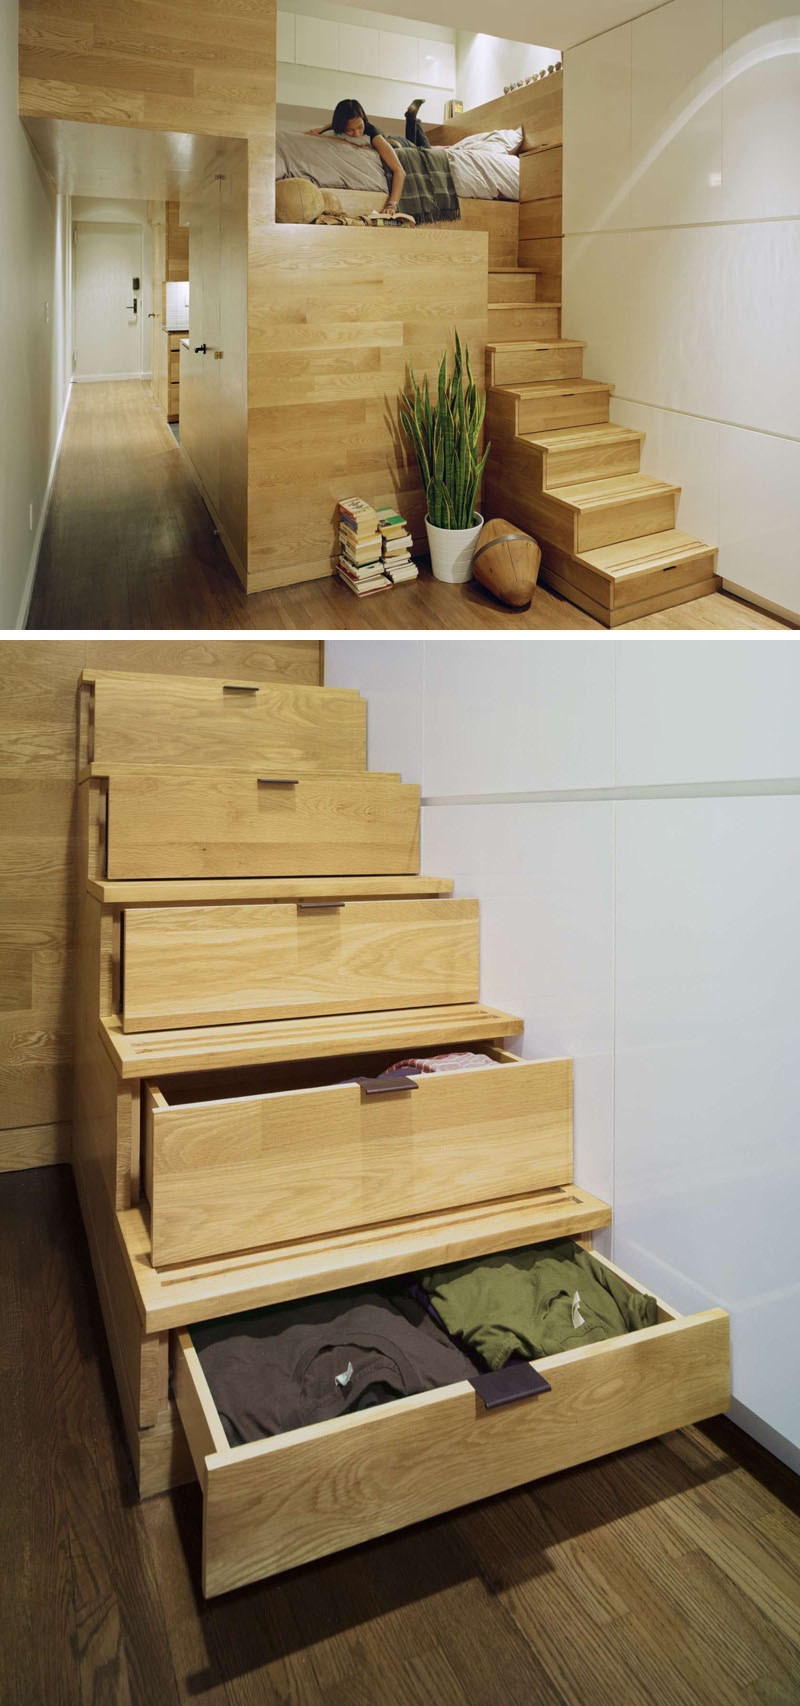 Ev Merdivenlerini Yer Kazandıran Tasarımlara Çeviren 15 Başarılı Örnek galerisi resim 14